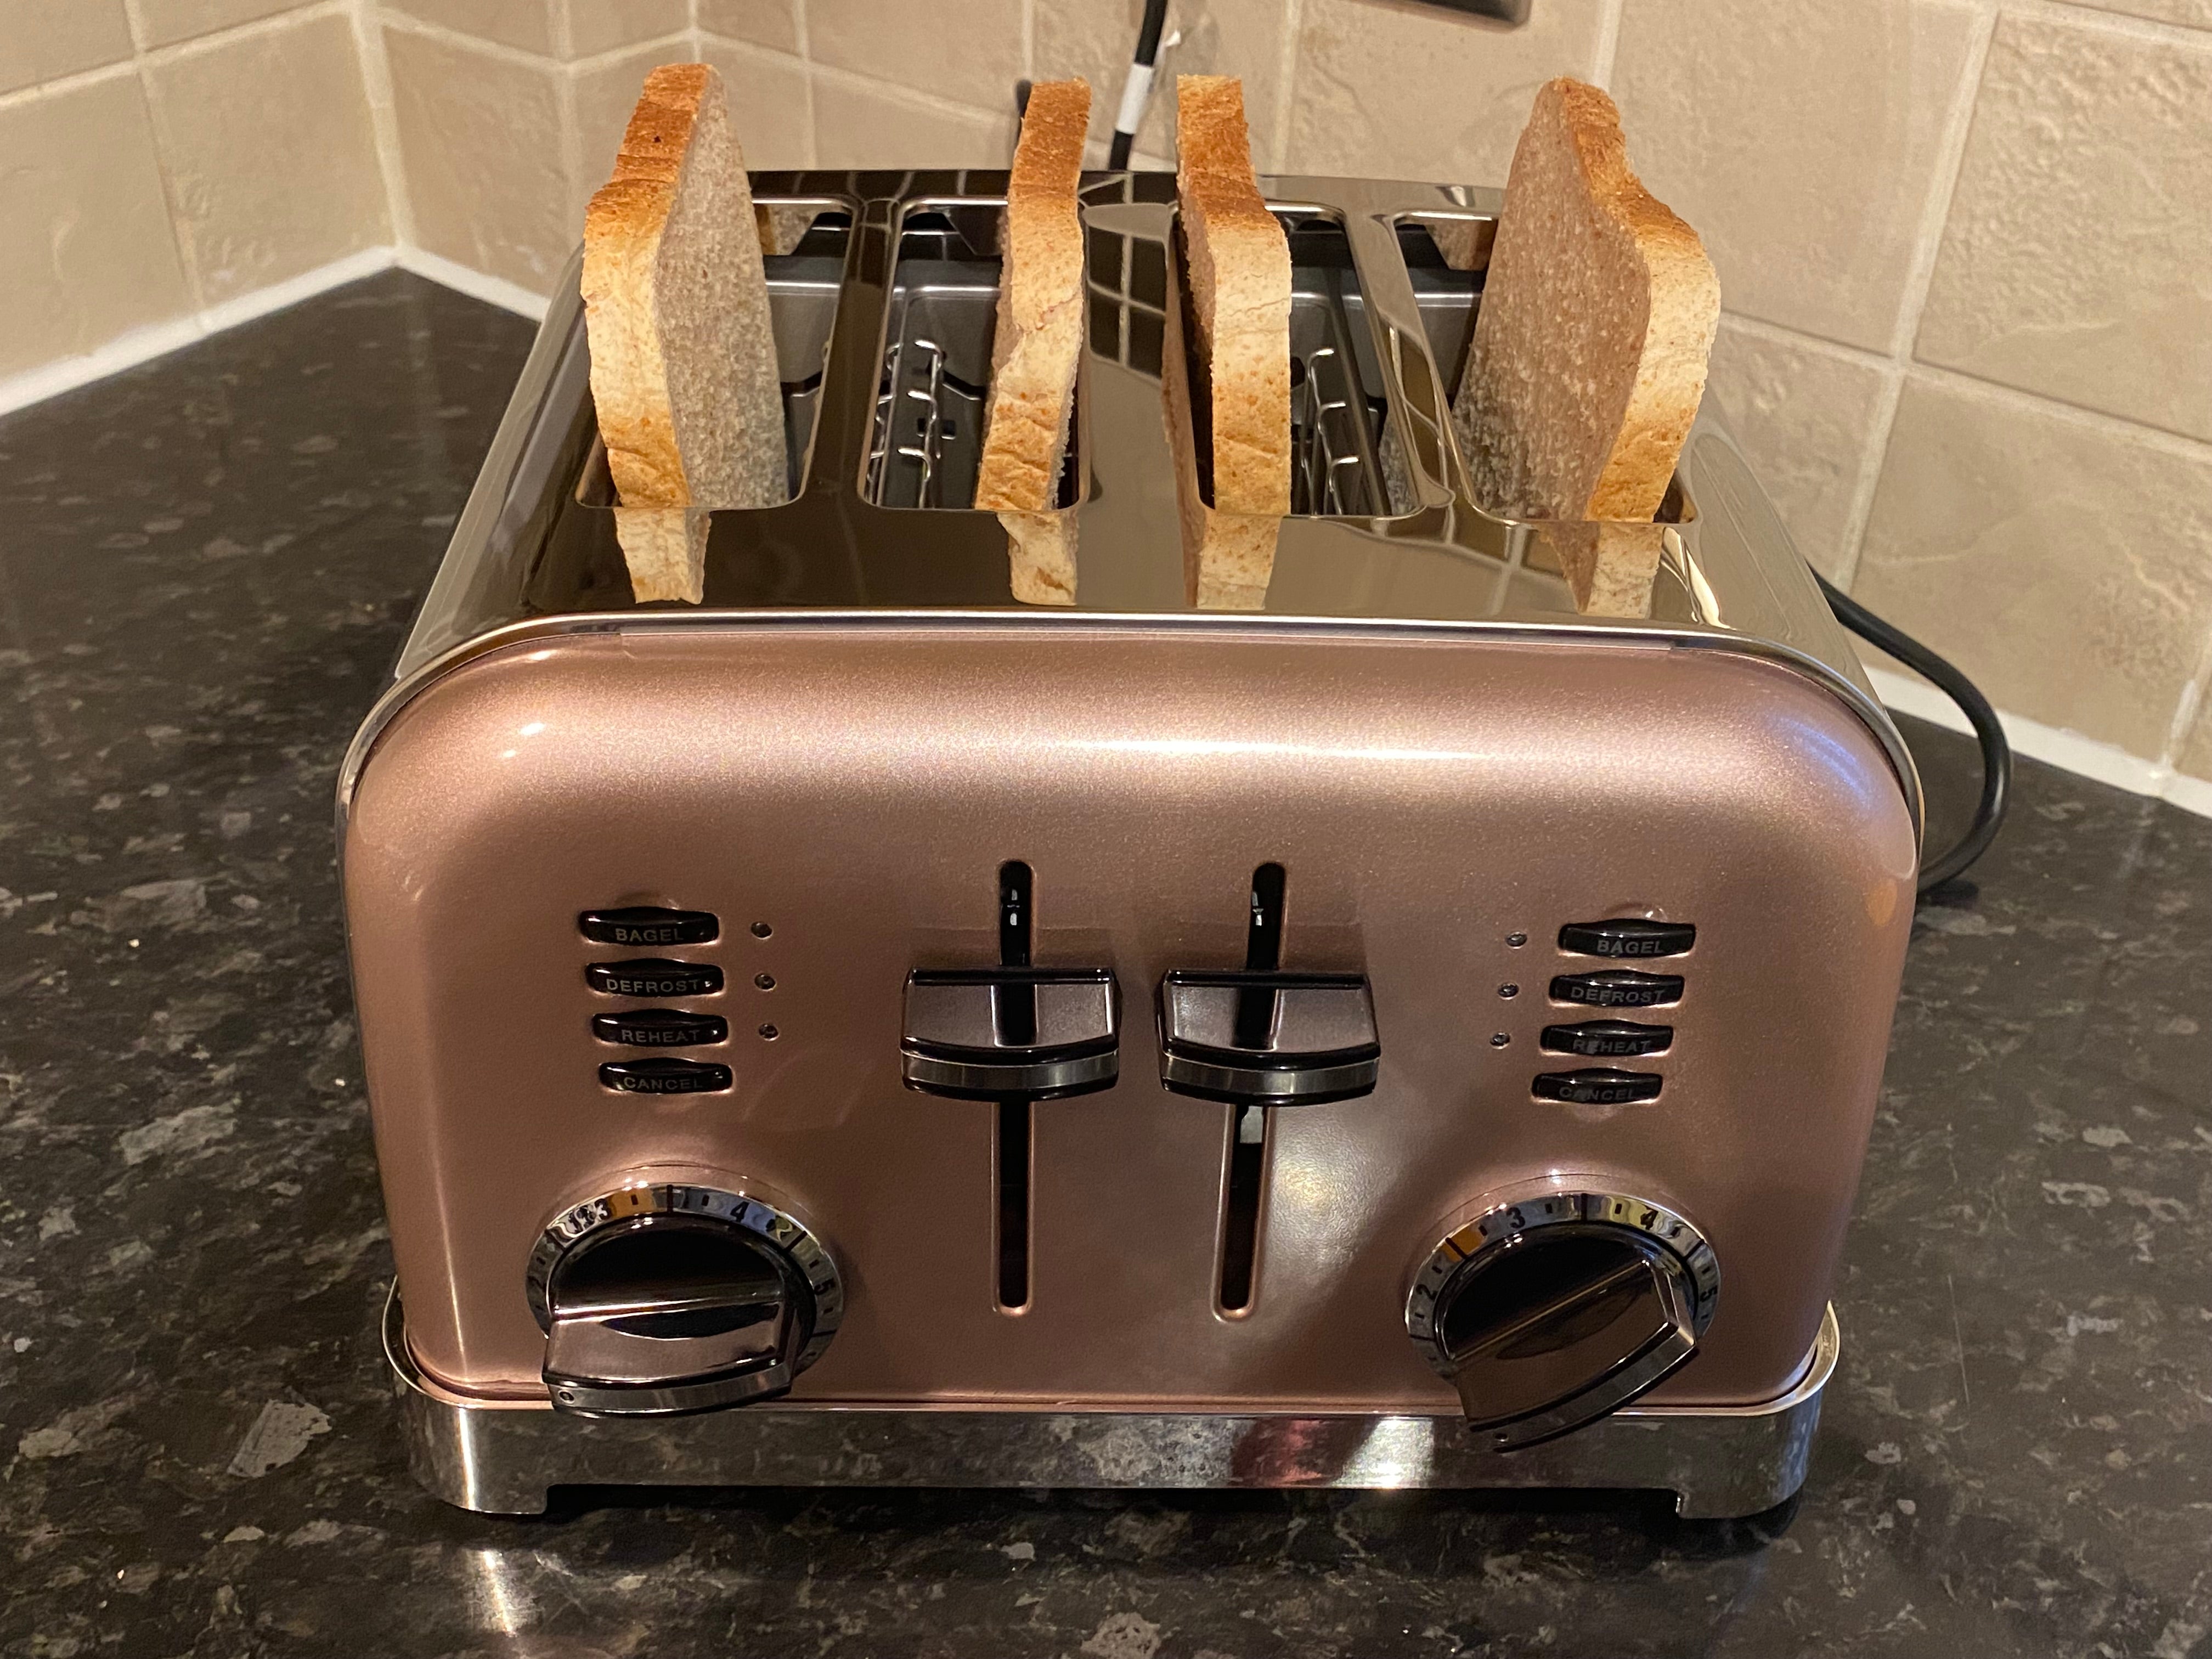 Cuisinart toaster  